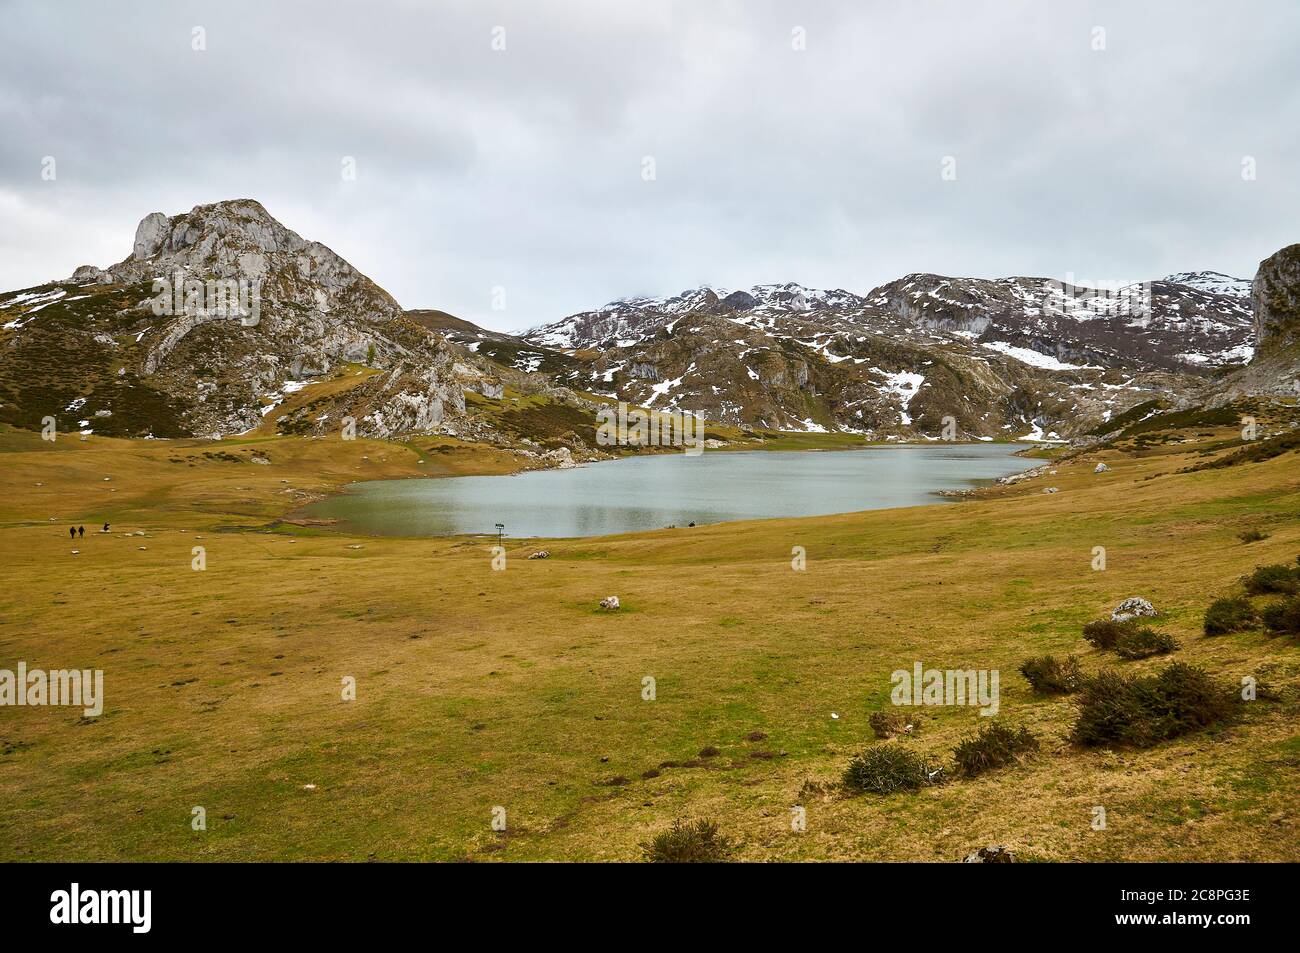 Escursionisti intorno al lago glaciale del Lago Ercina in una giornata nuvolosa con neve nelle cime vicine (Cangas de Onís, Parco Nazionale Picos de Europa, Asturie, Spagna) Foto Stock